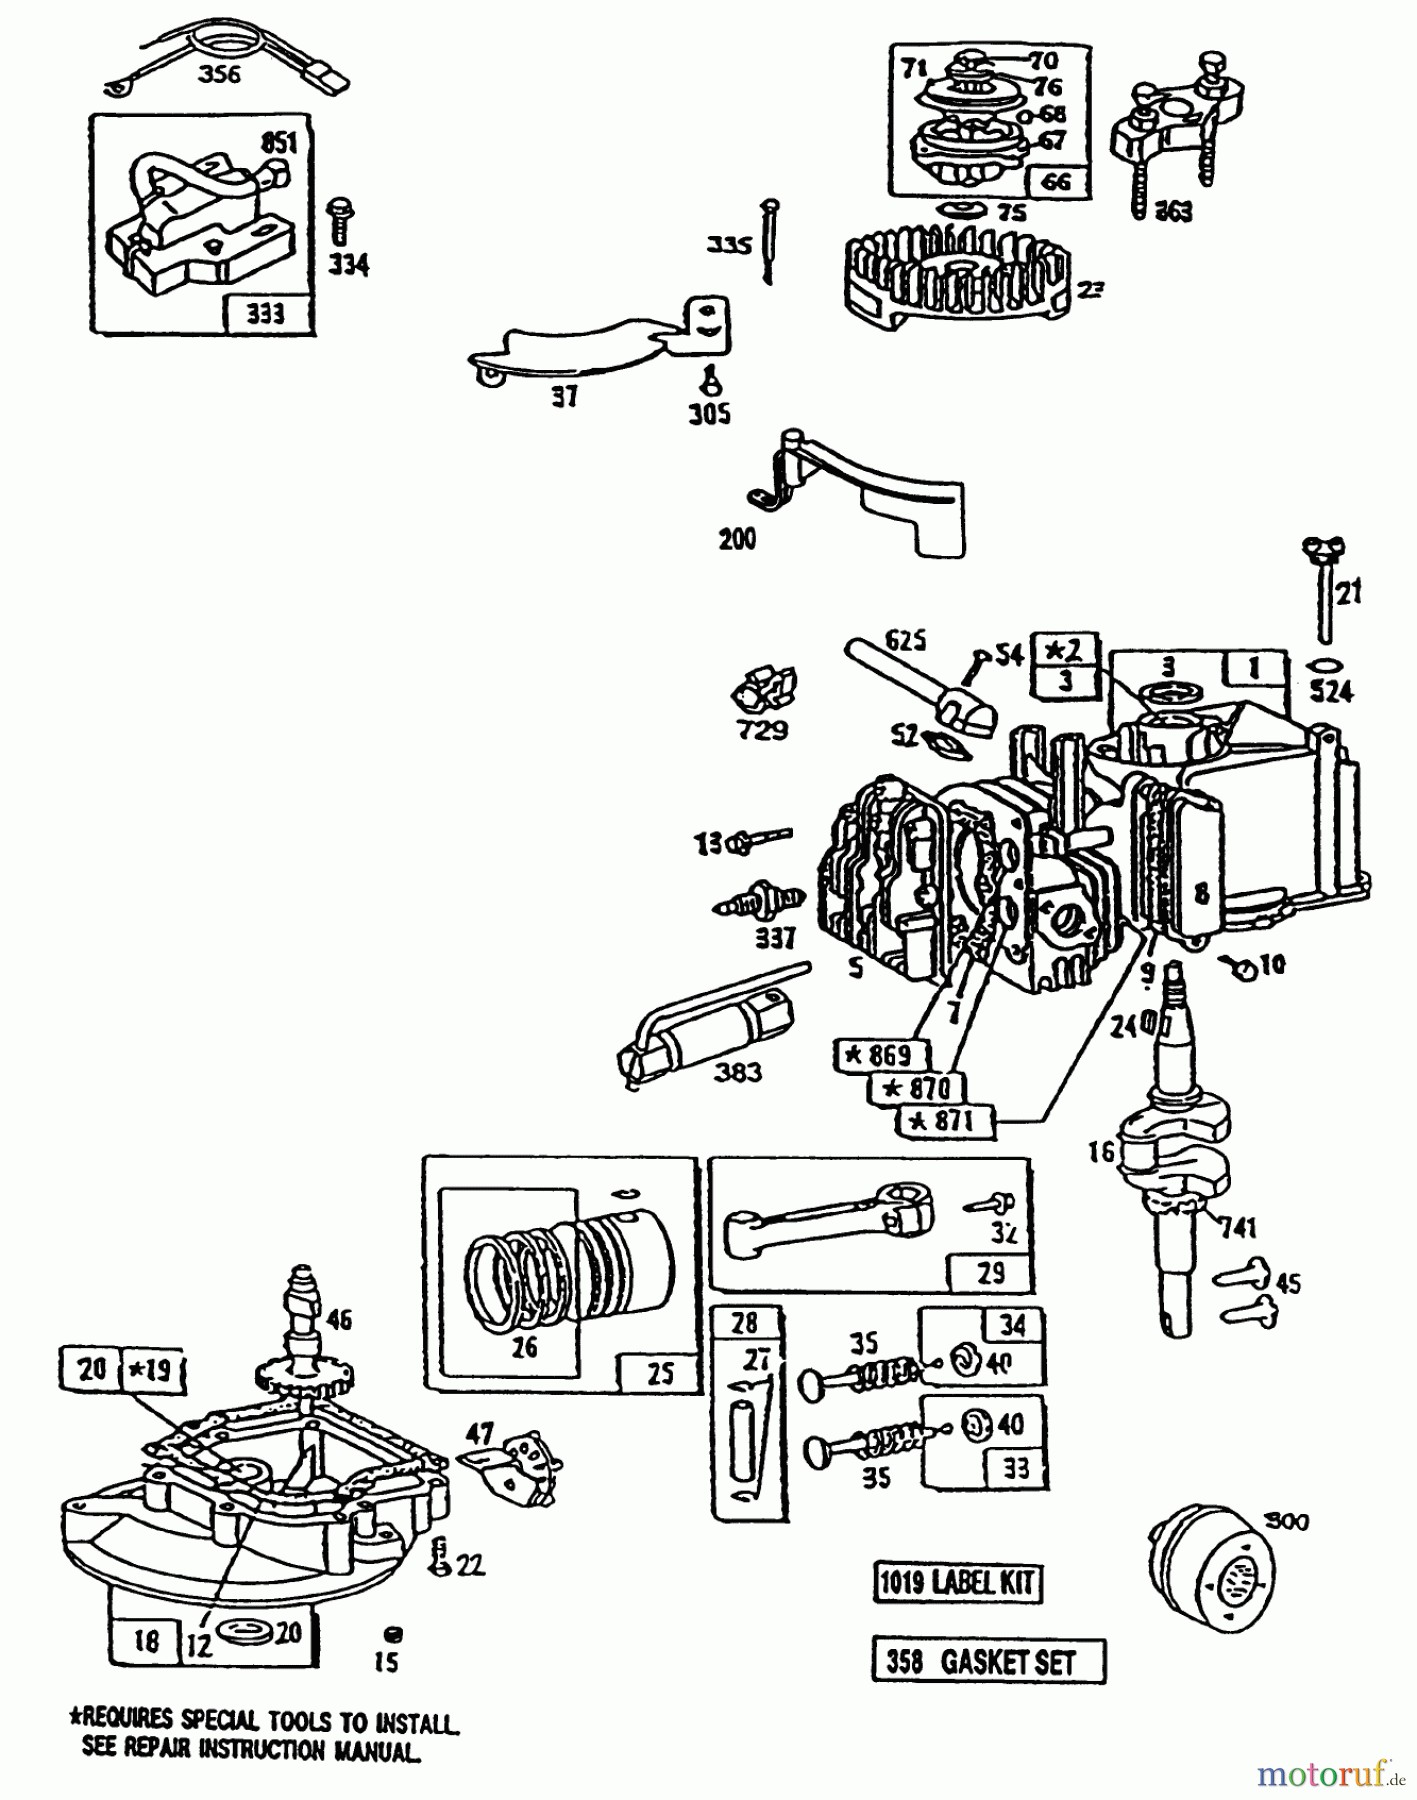  Toro Neu Mowers, Walk-Behind Seite 1 20182 - Toro Lawnmower, 1993 (39000001-39999999) ENGINE BRIGGS & STRATTON MODEL 95902-3148-01 #2